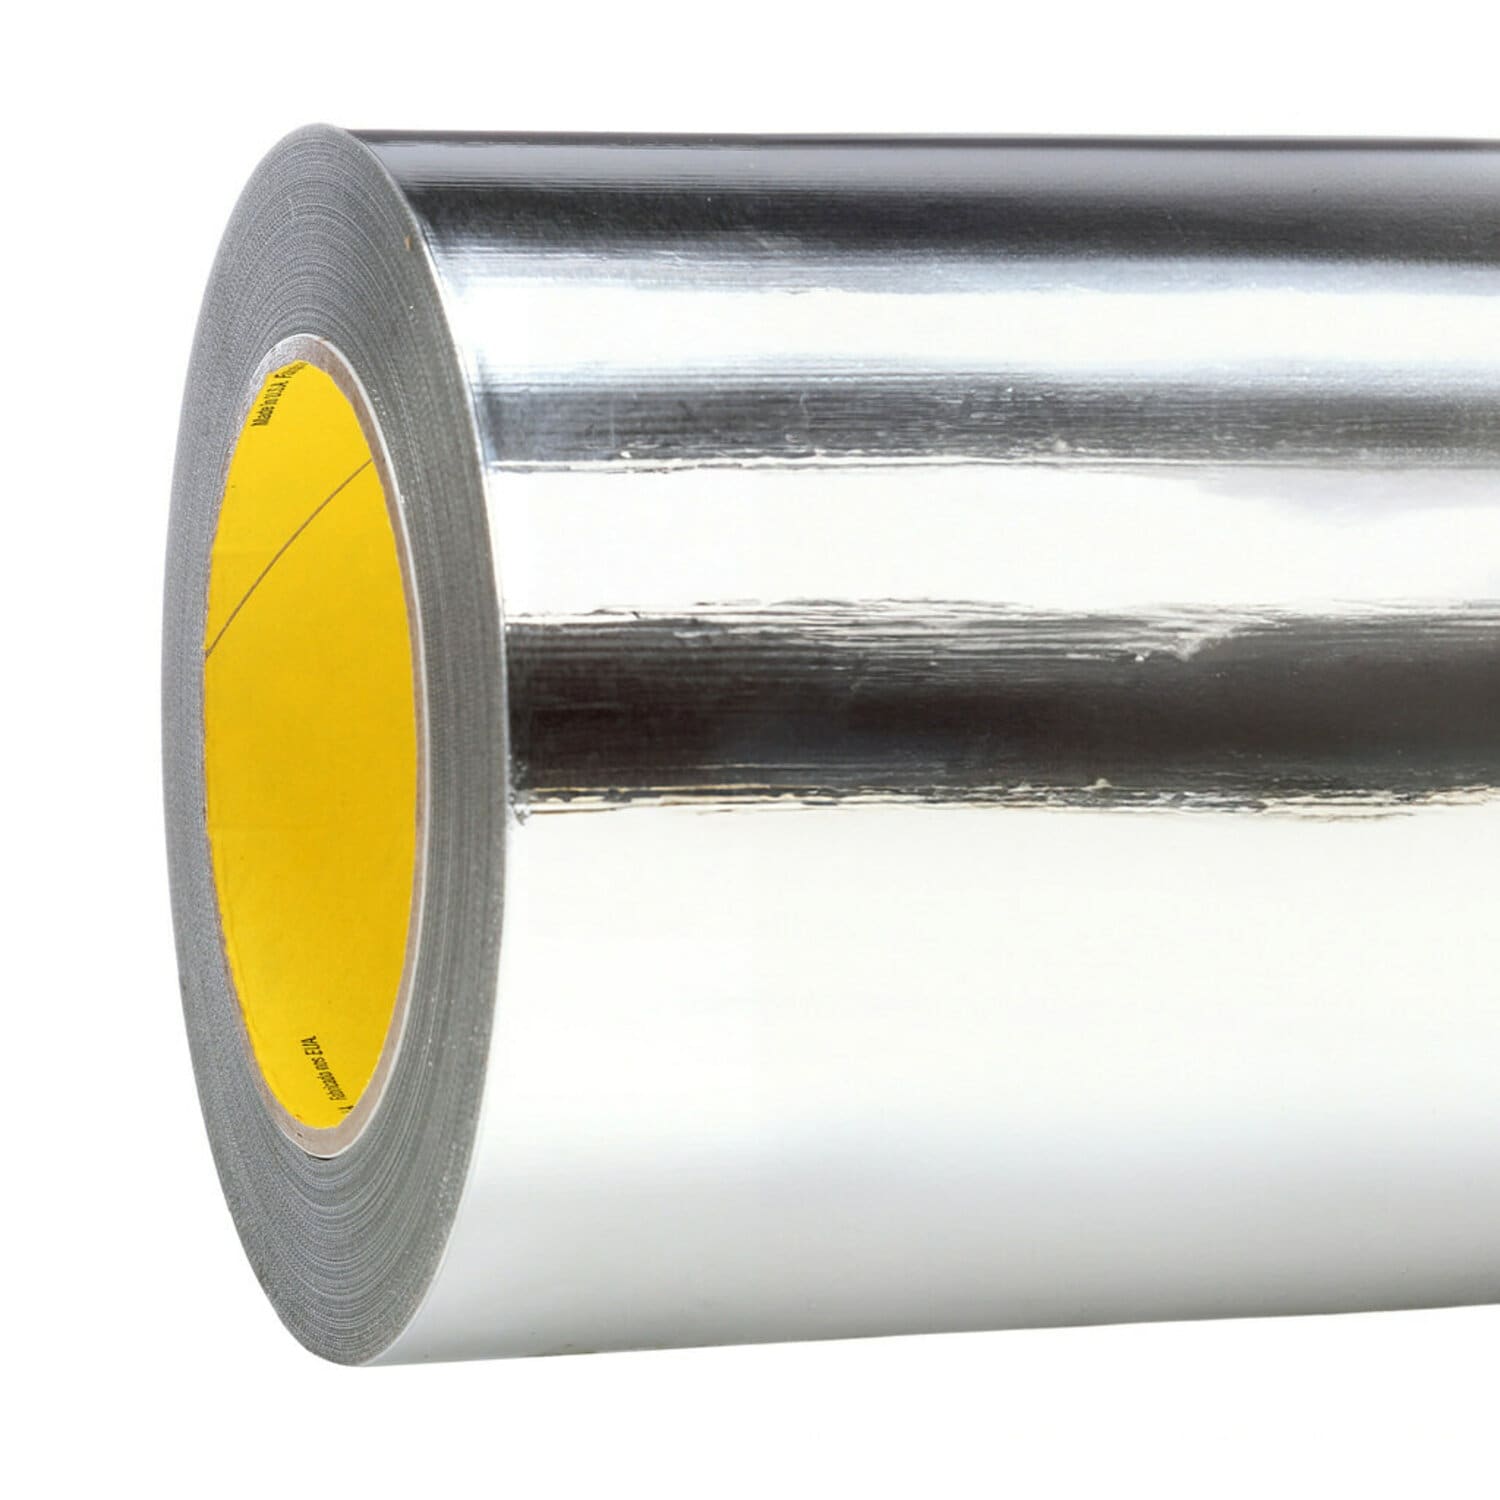 7010314238 - 3M Aluminum Foil Tape 427, Silver, 21 in x 60 yd, 4.6 mil, 1 roll per
case